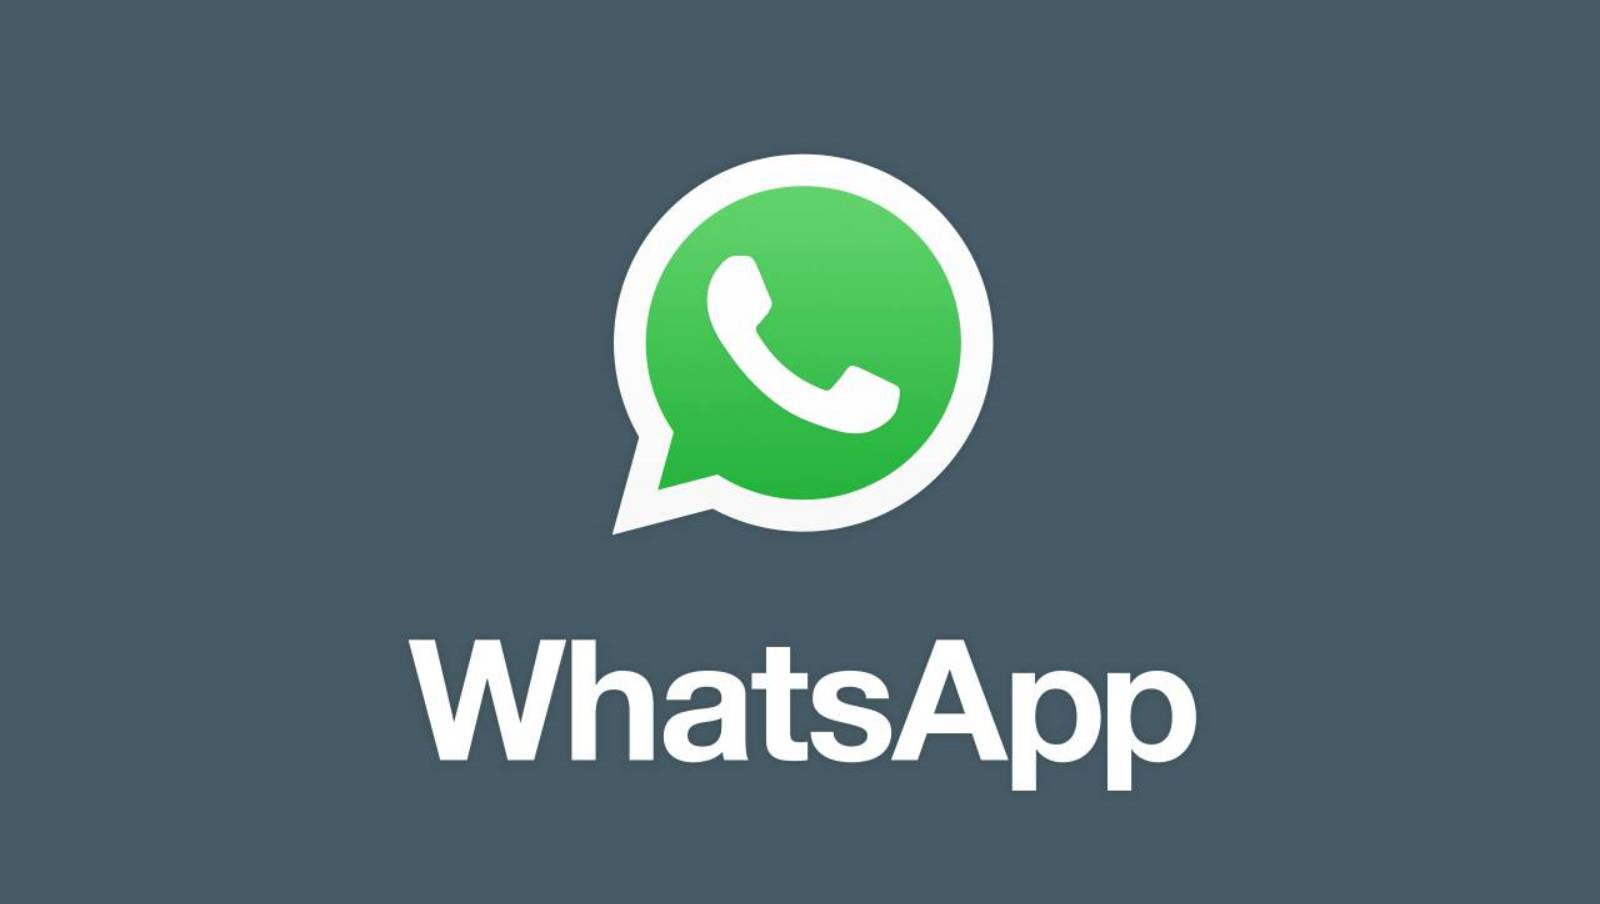 WhatsApp searches